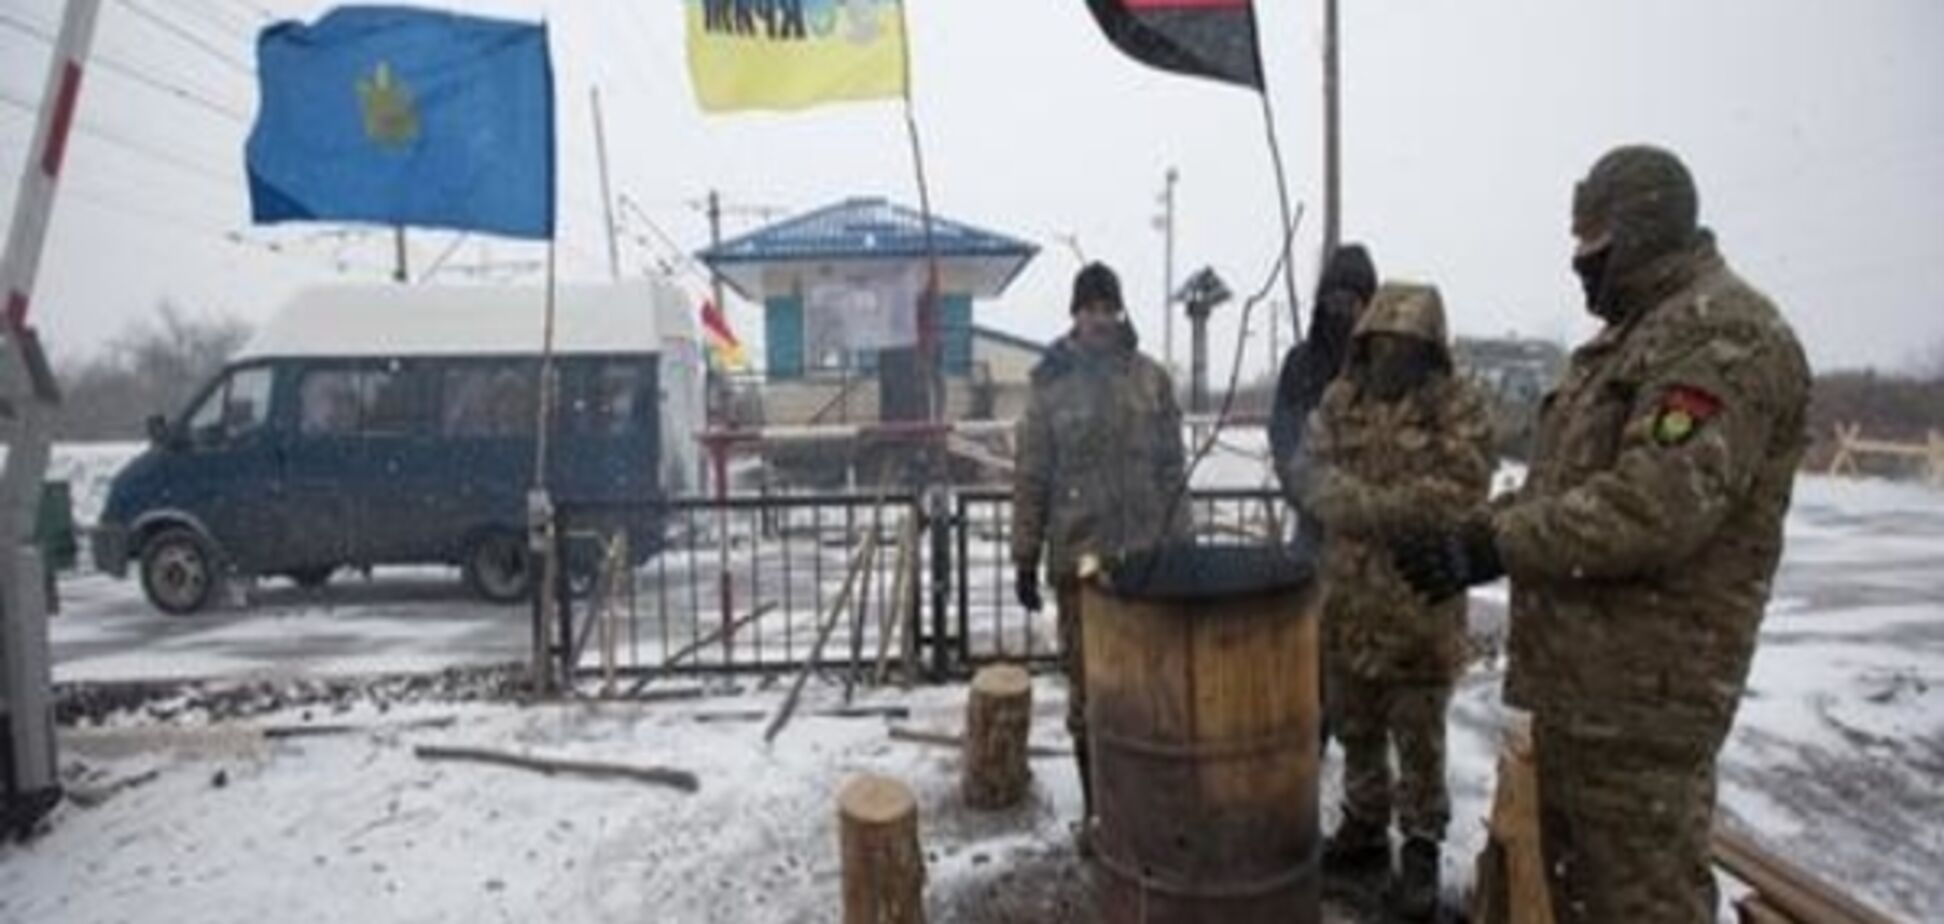 У зоні АТО СБУ затримала 43 озброєних осіб - учасники блокади Донбасу заявляють про розгін